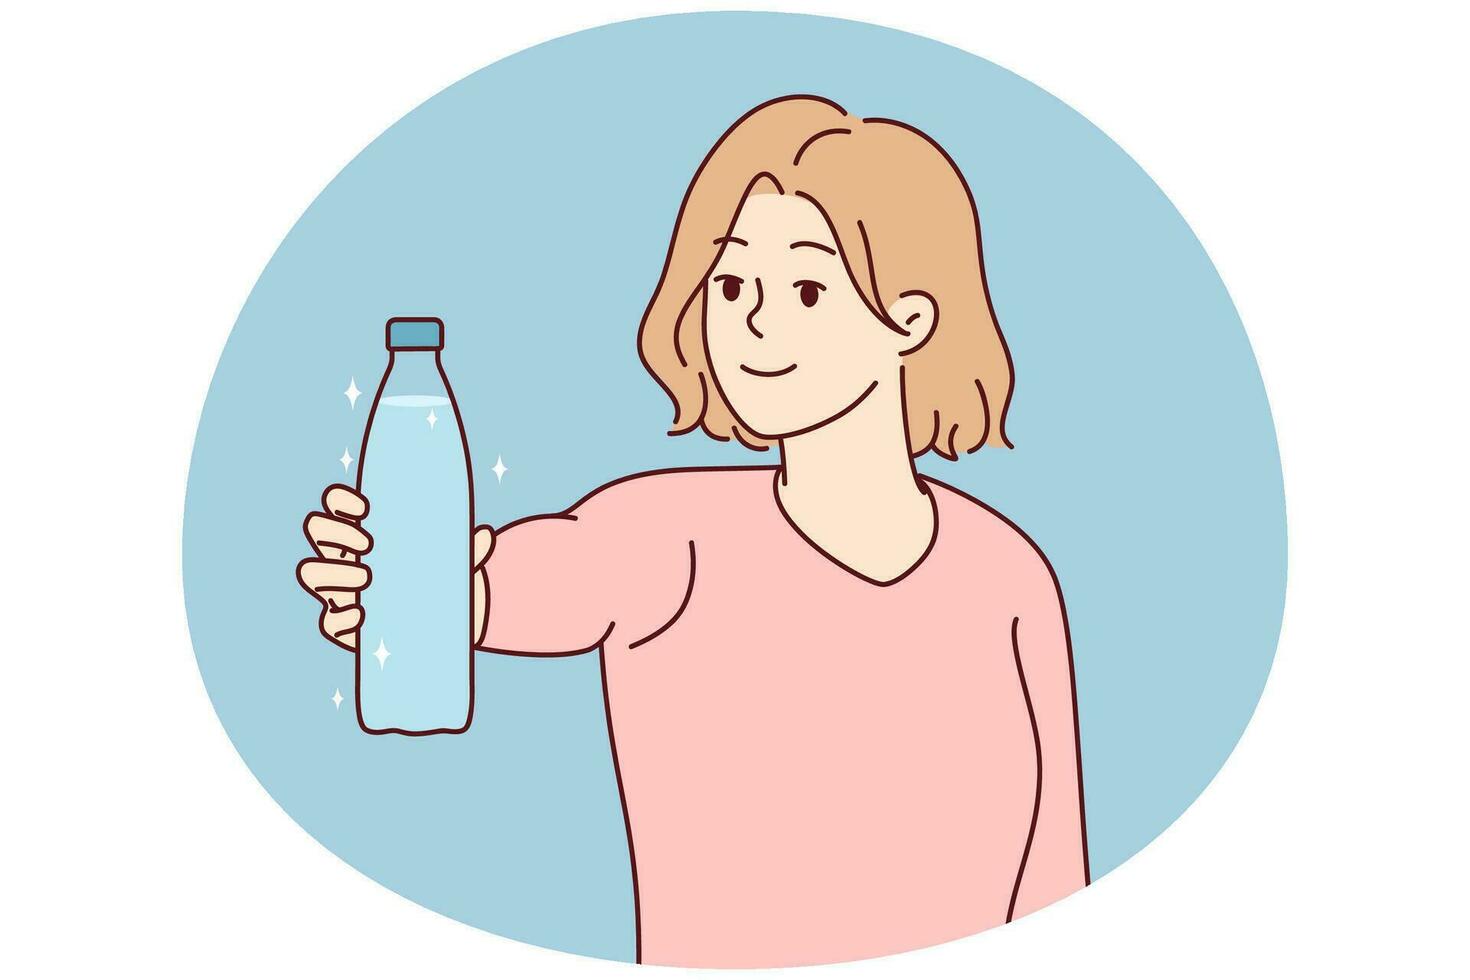 jovem sorridente segura garrafa de água recomenda beber aqua claro e limpo. mulher feliz faz recomendação para um estilo de vida saudável. ilustração vetorial. vetor